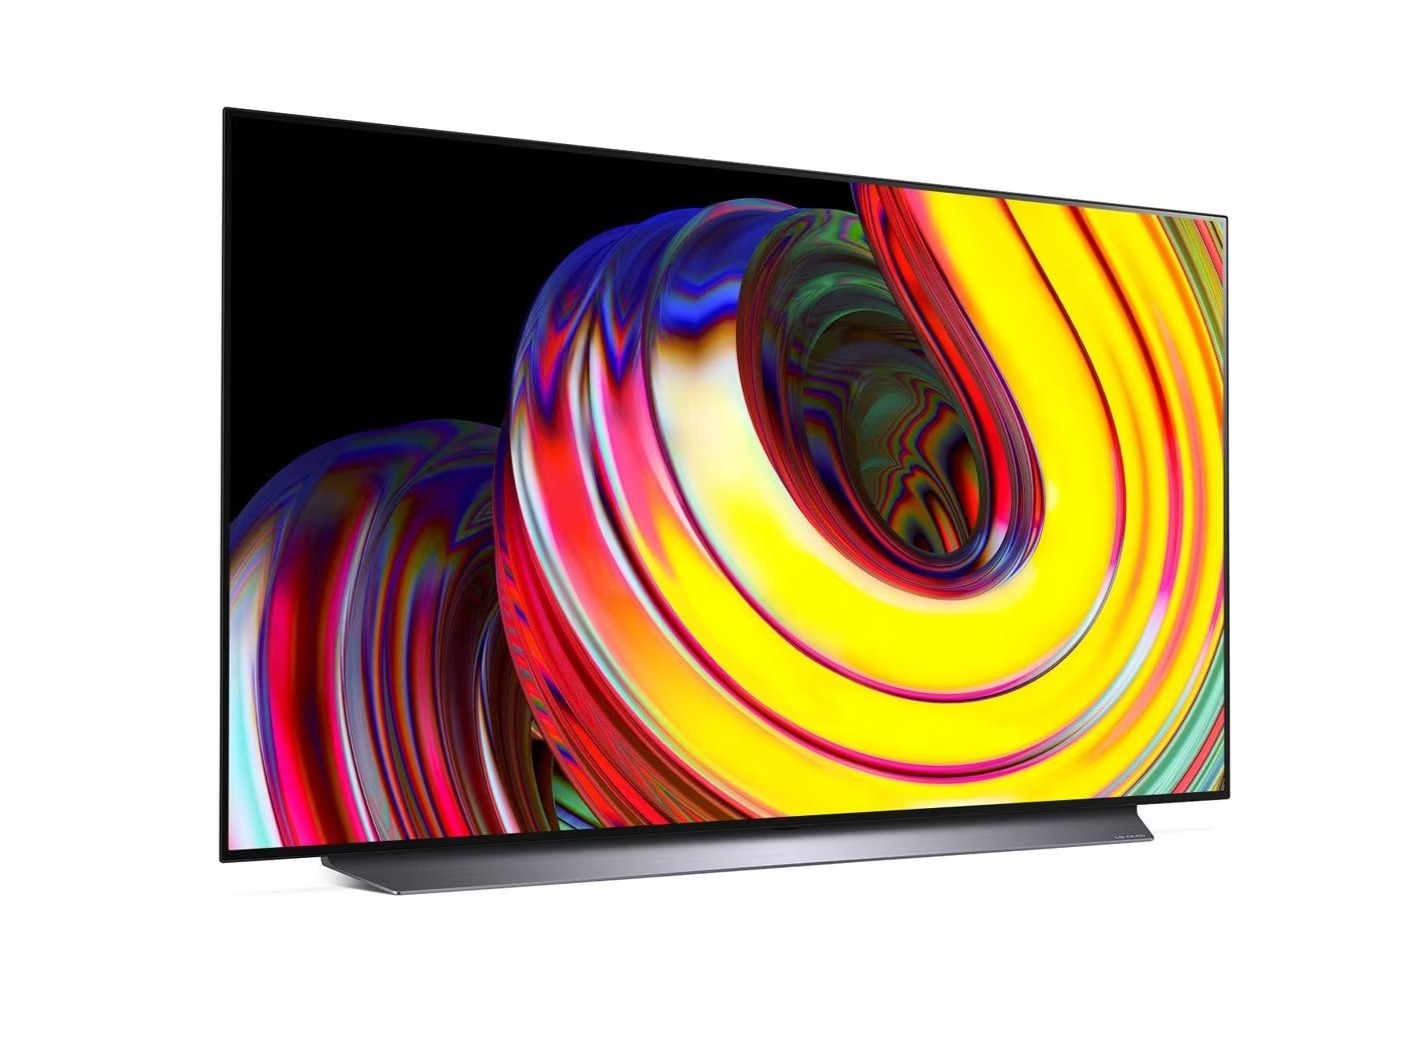 LG 77CS oled televízió talpon, enyhén jobbra fodítva lilás sárga árnyalatú absztrakt ábra a kijelzőn.